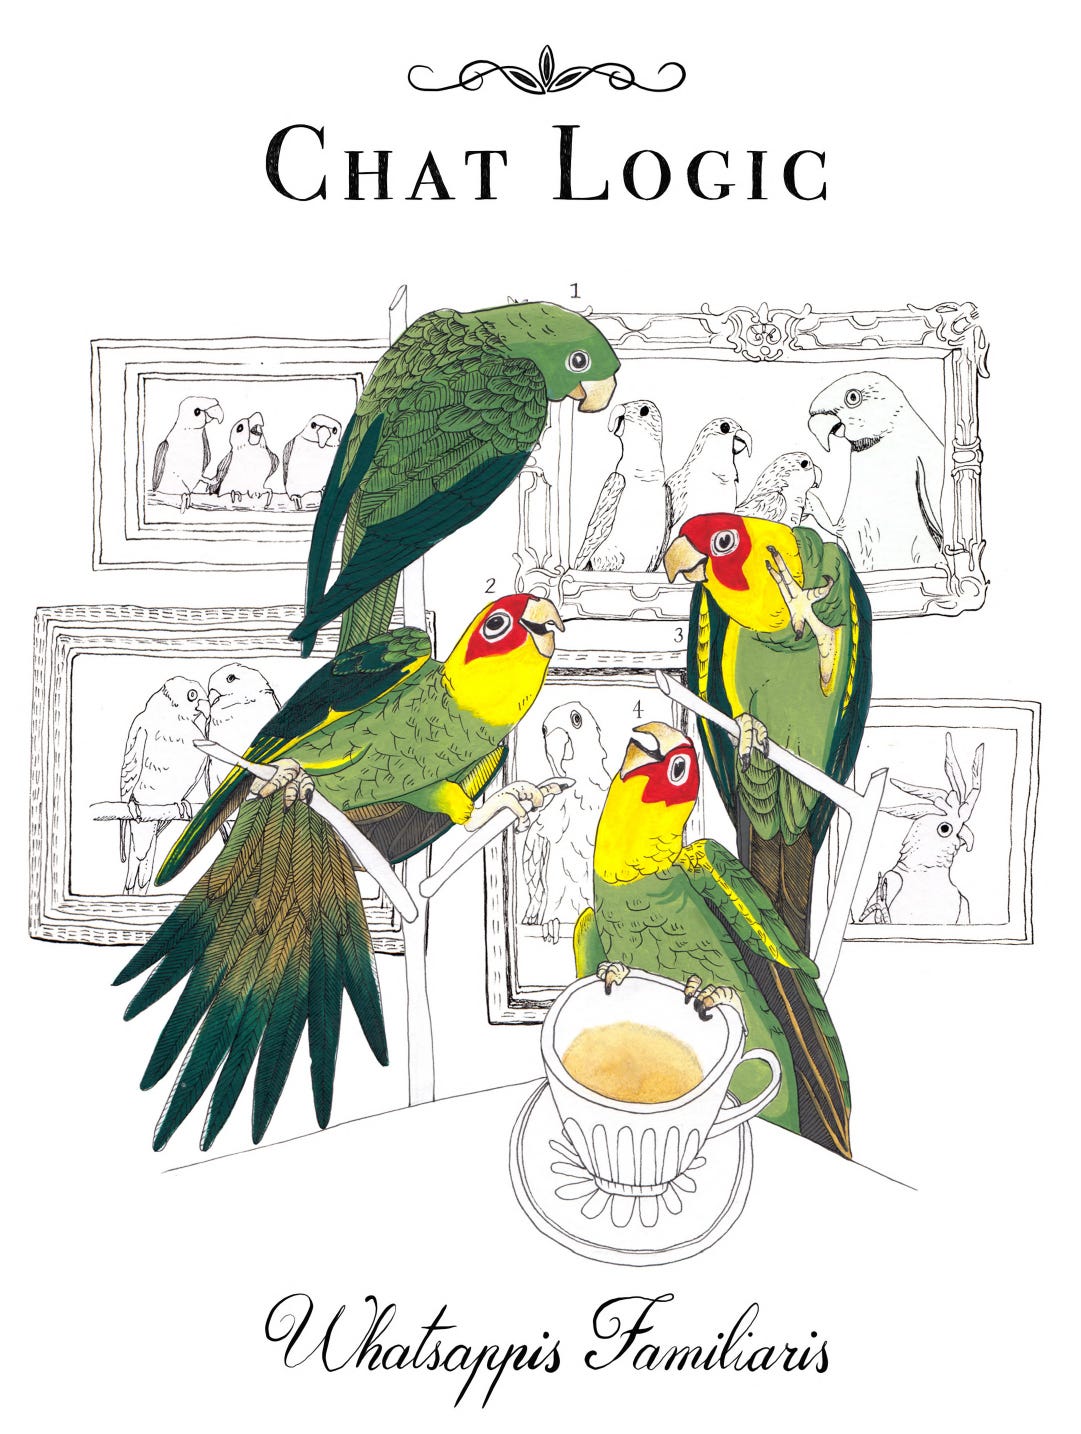 Image description: Green parrots engage in a salon style conversation. 